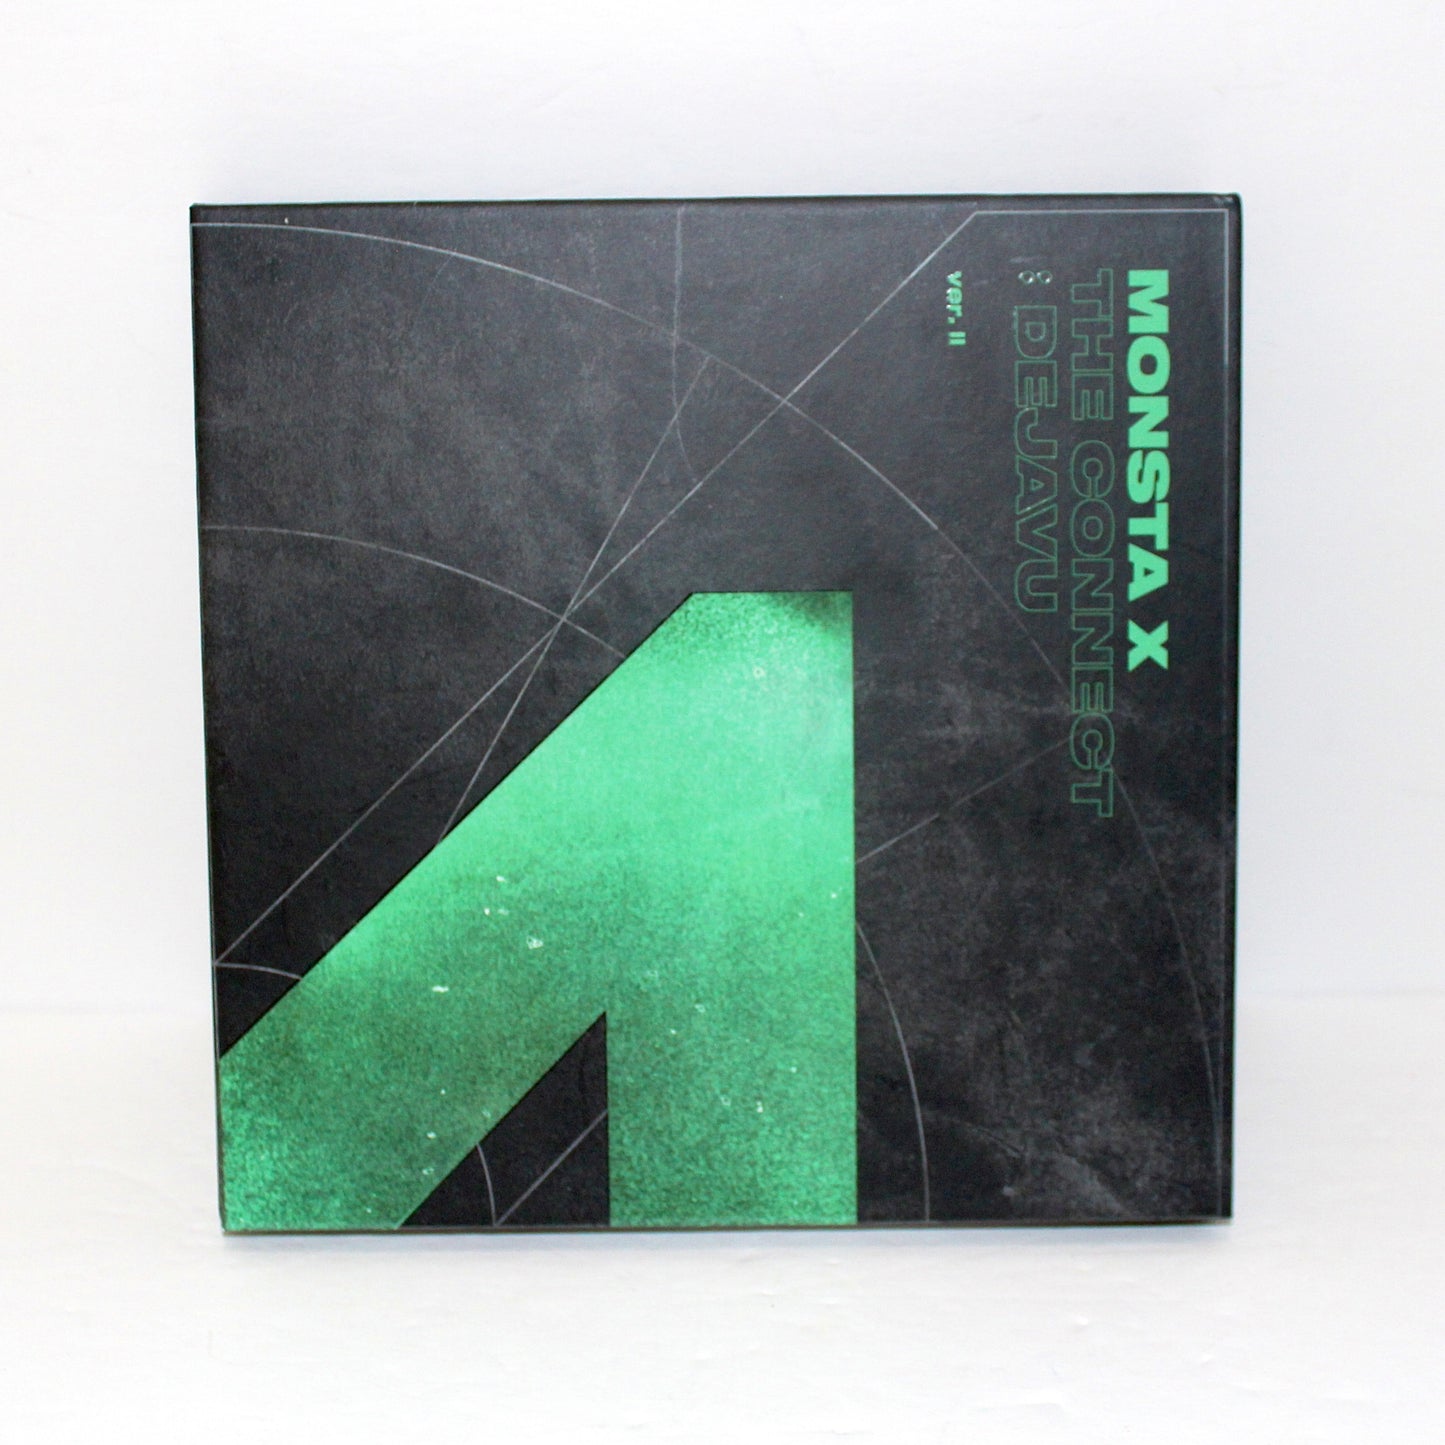 MONSTA X 6th Mini Album: The Connect: Dejavu | Ver. 2